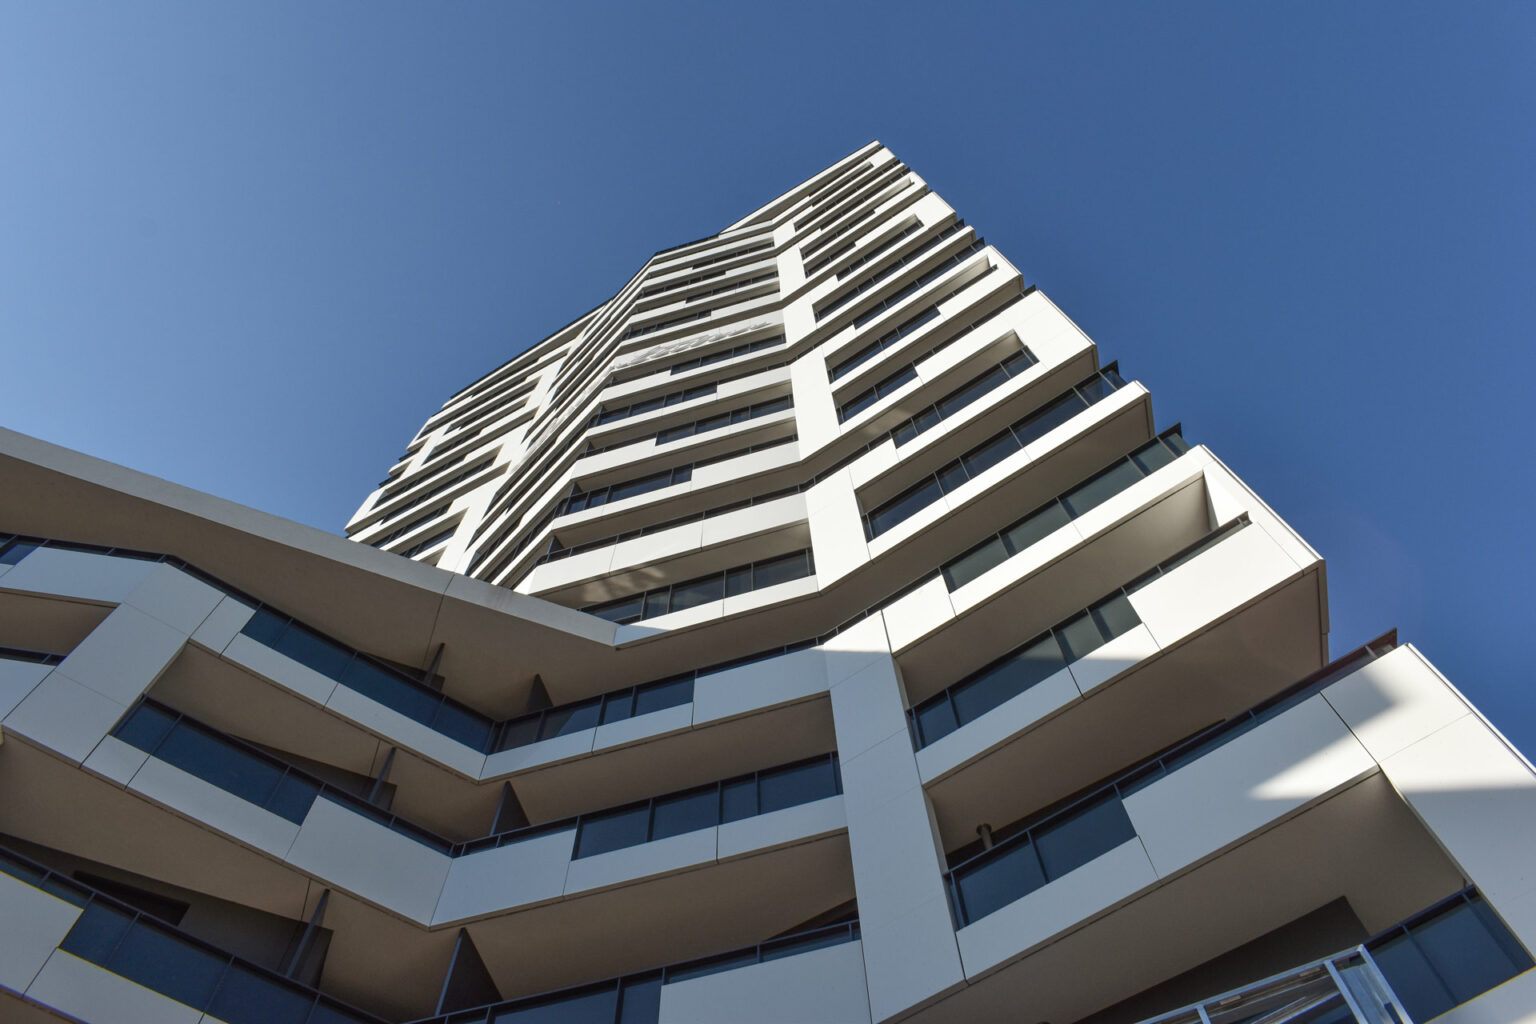 Wohnen im Luisencarré in Magdeburg die Turmfassade ein Entwurf der Sattler+Täger Architekten GmbH